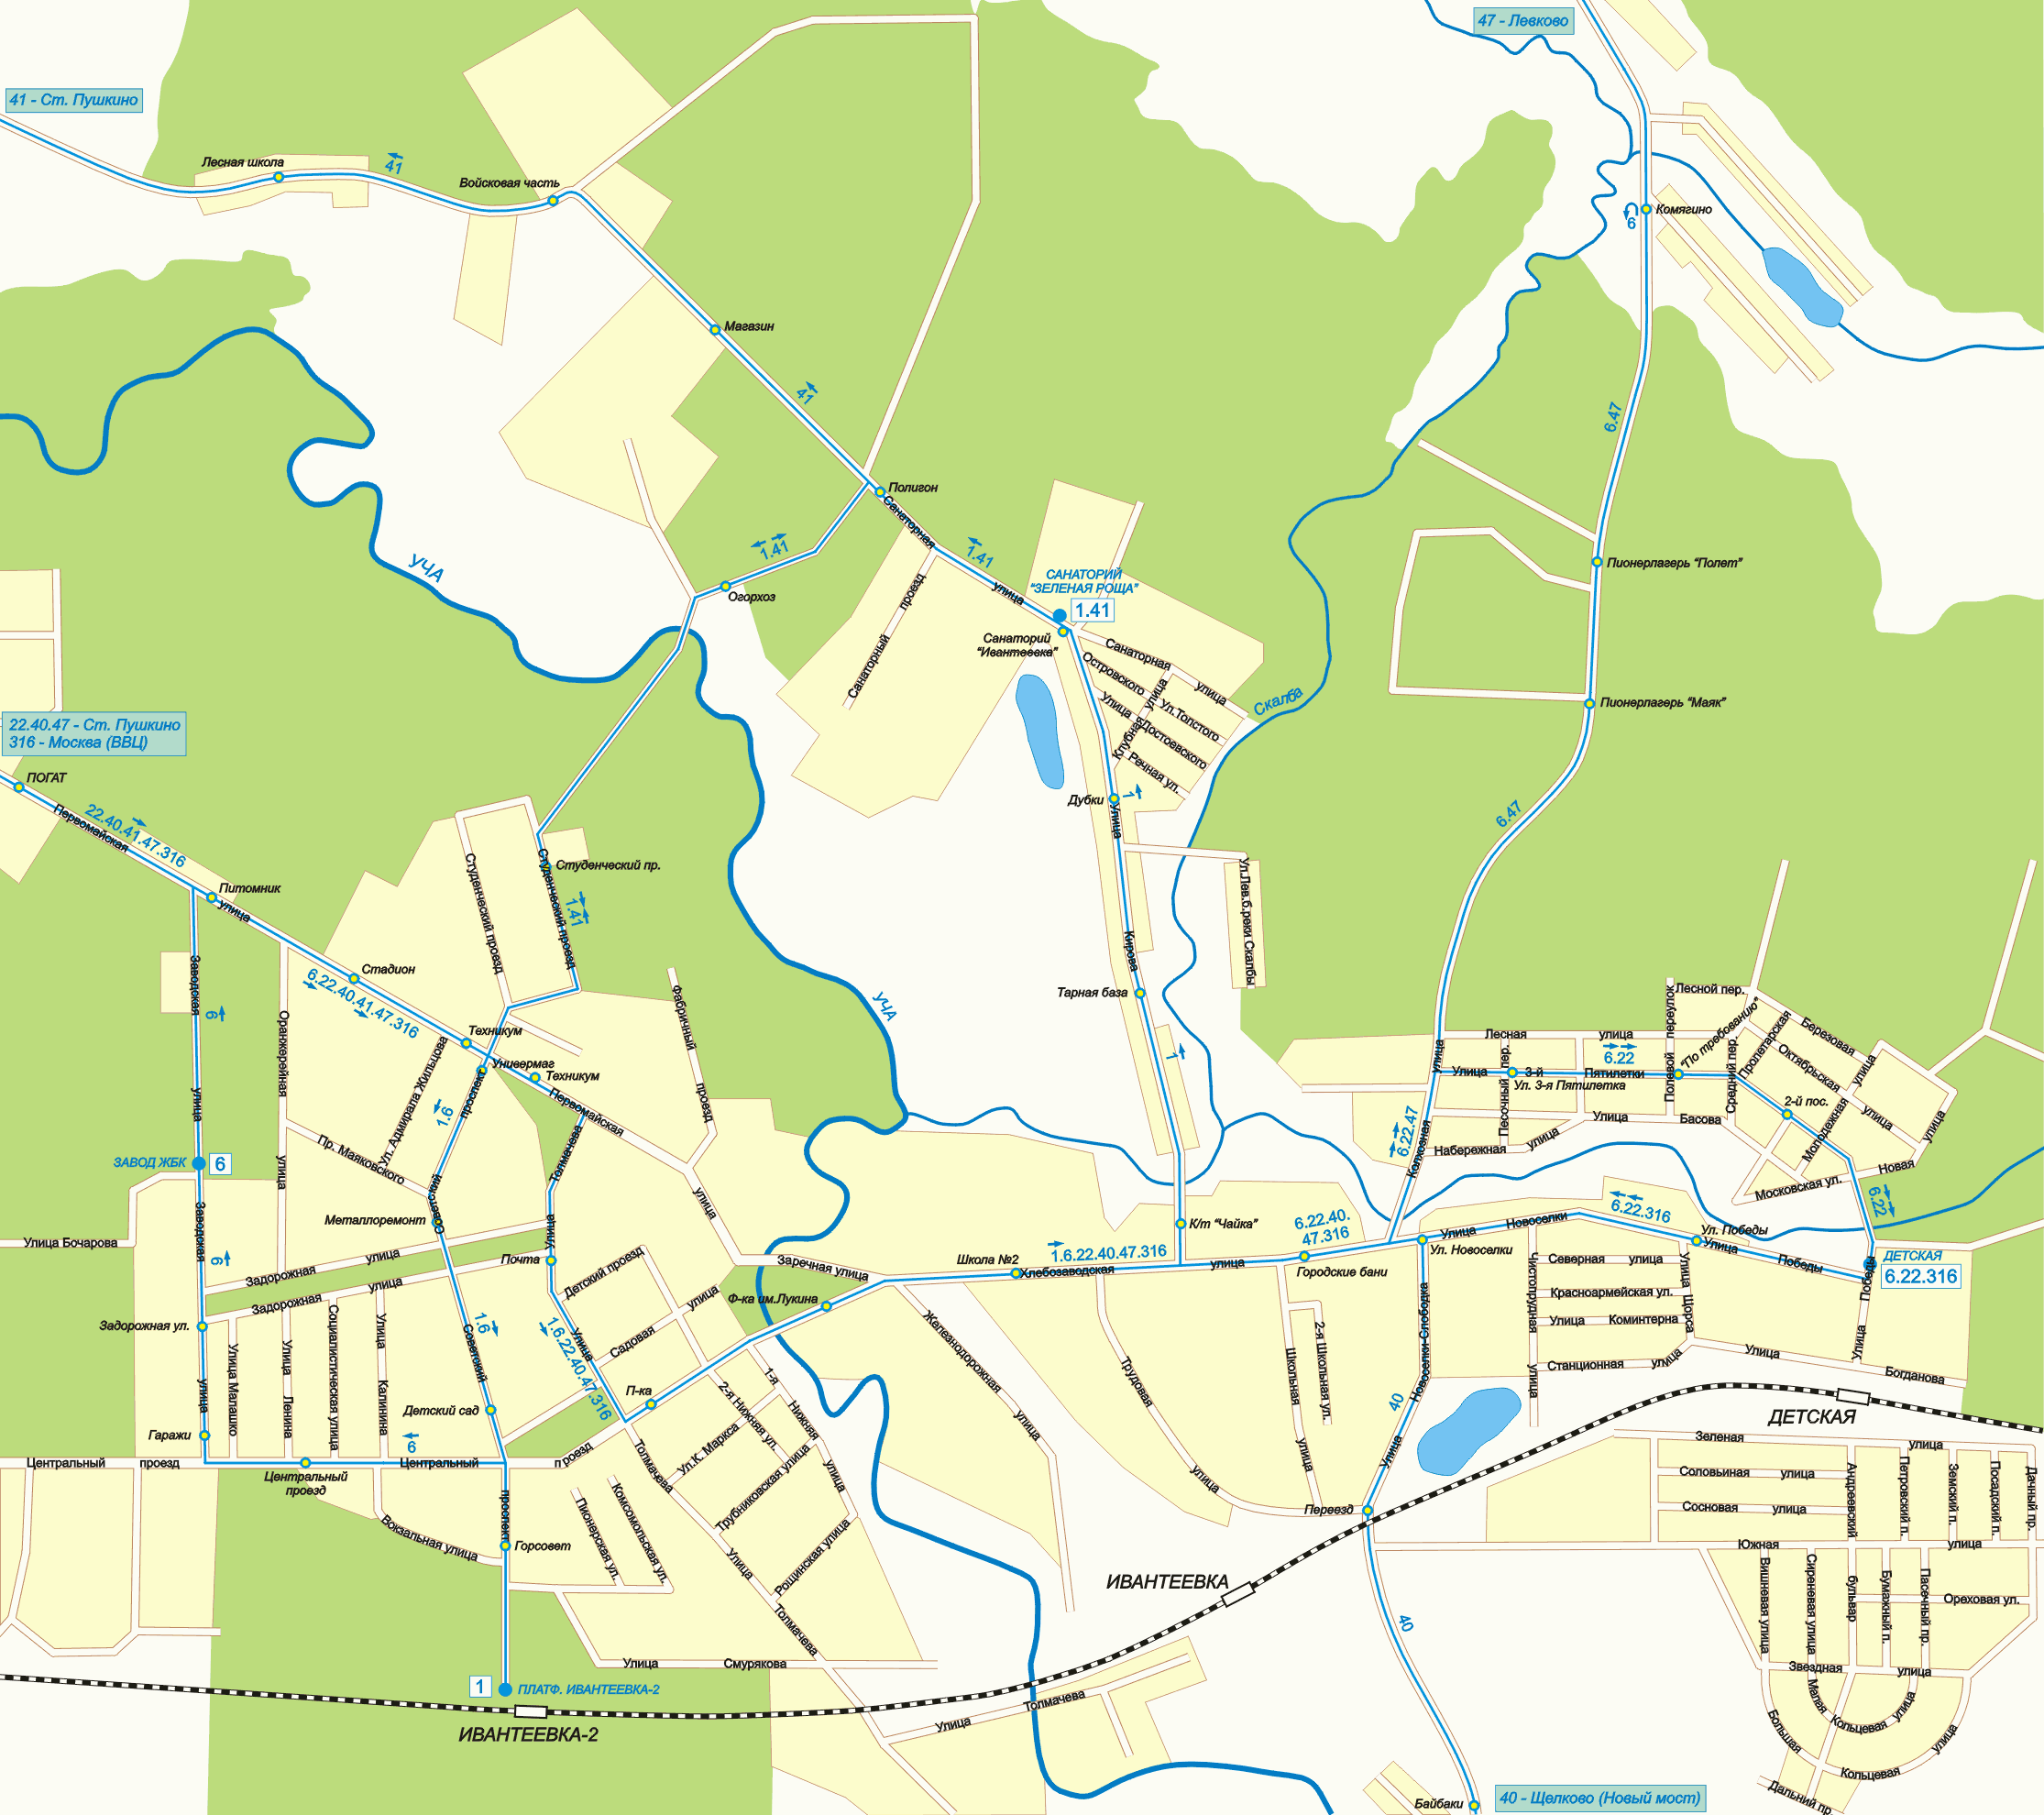 Map of Ivanteevka